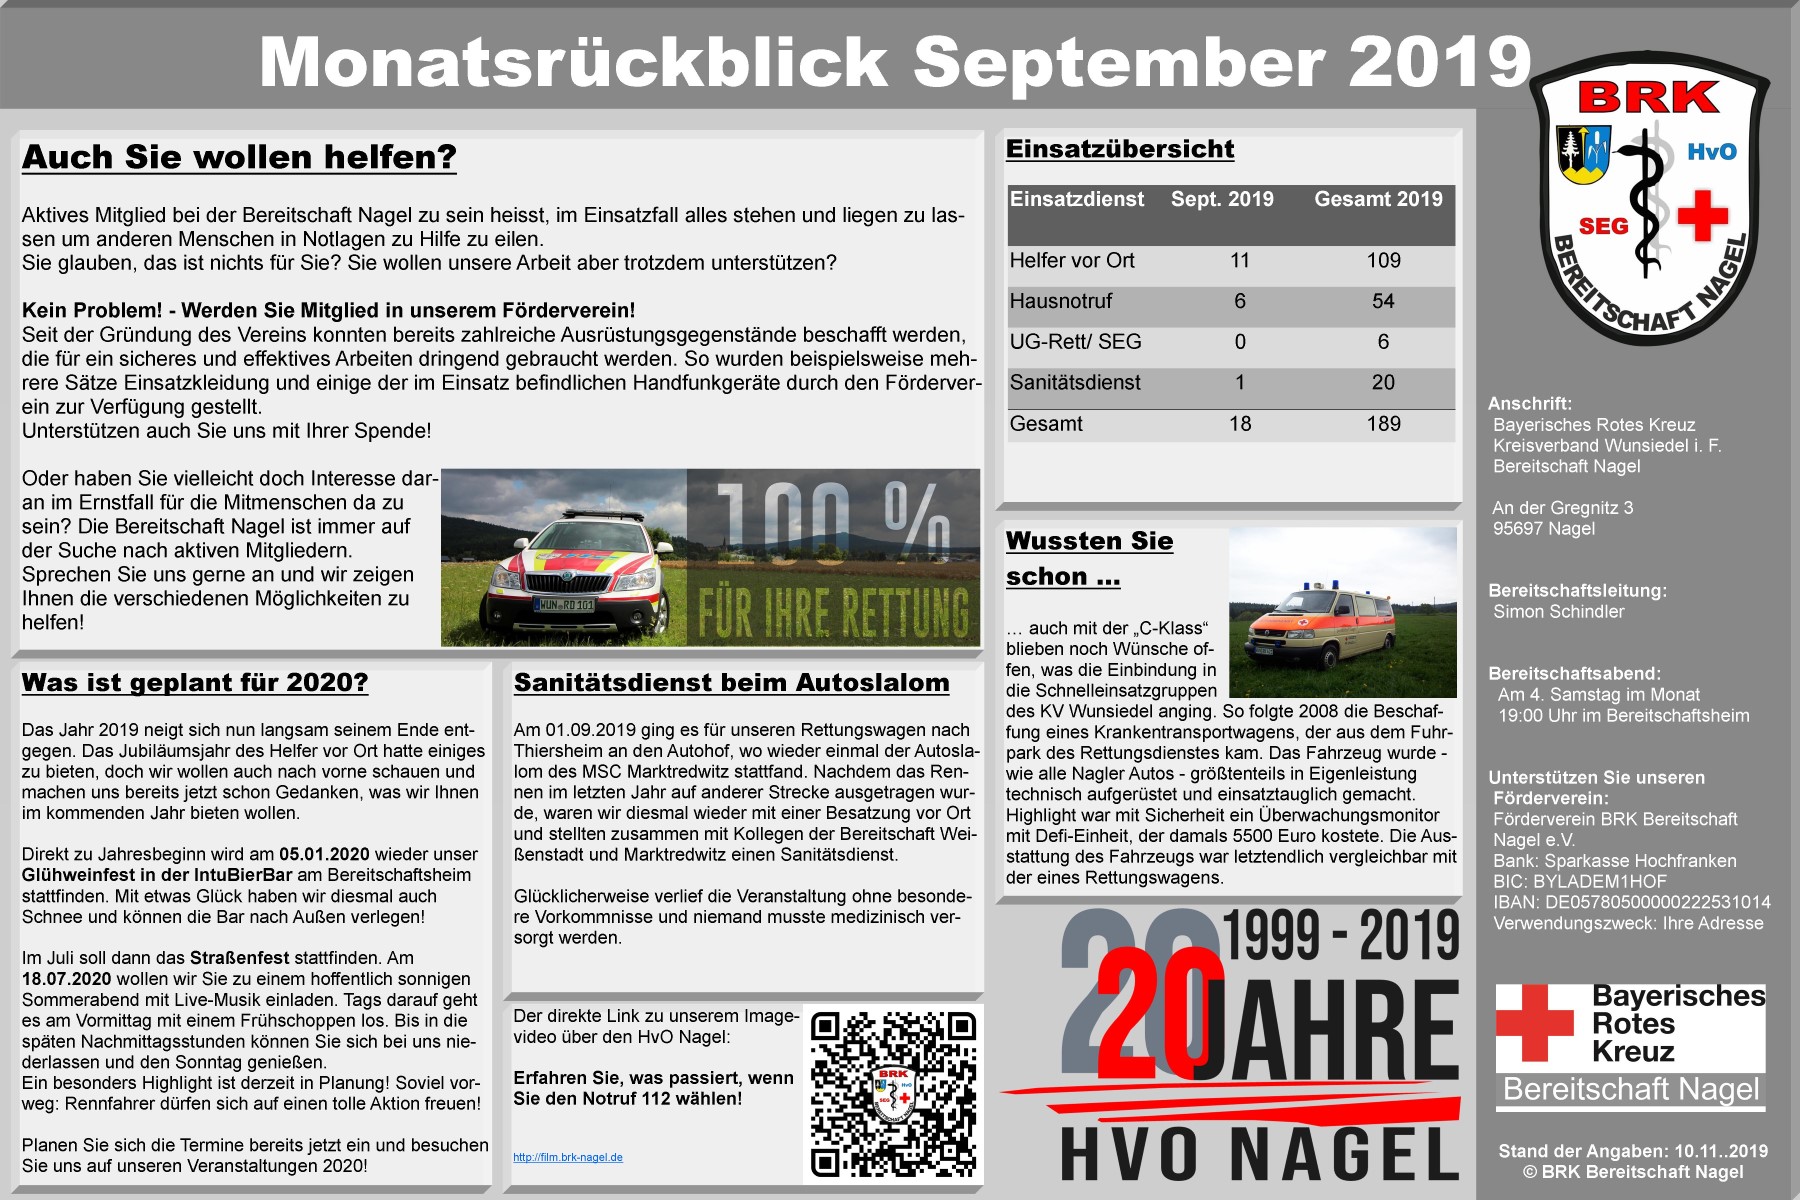 9_-_Plakat_Monatsrckblick_September_2019.jpg